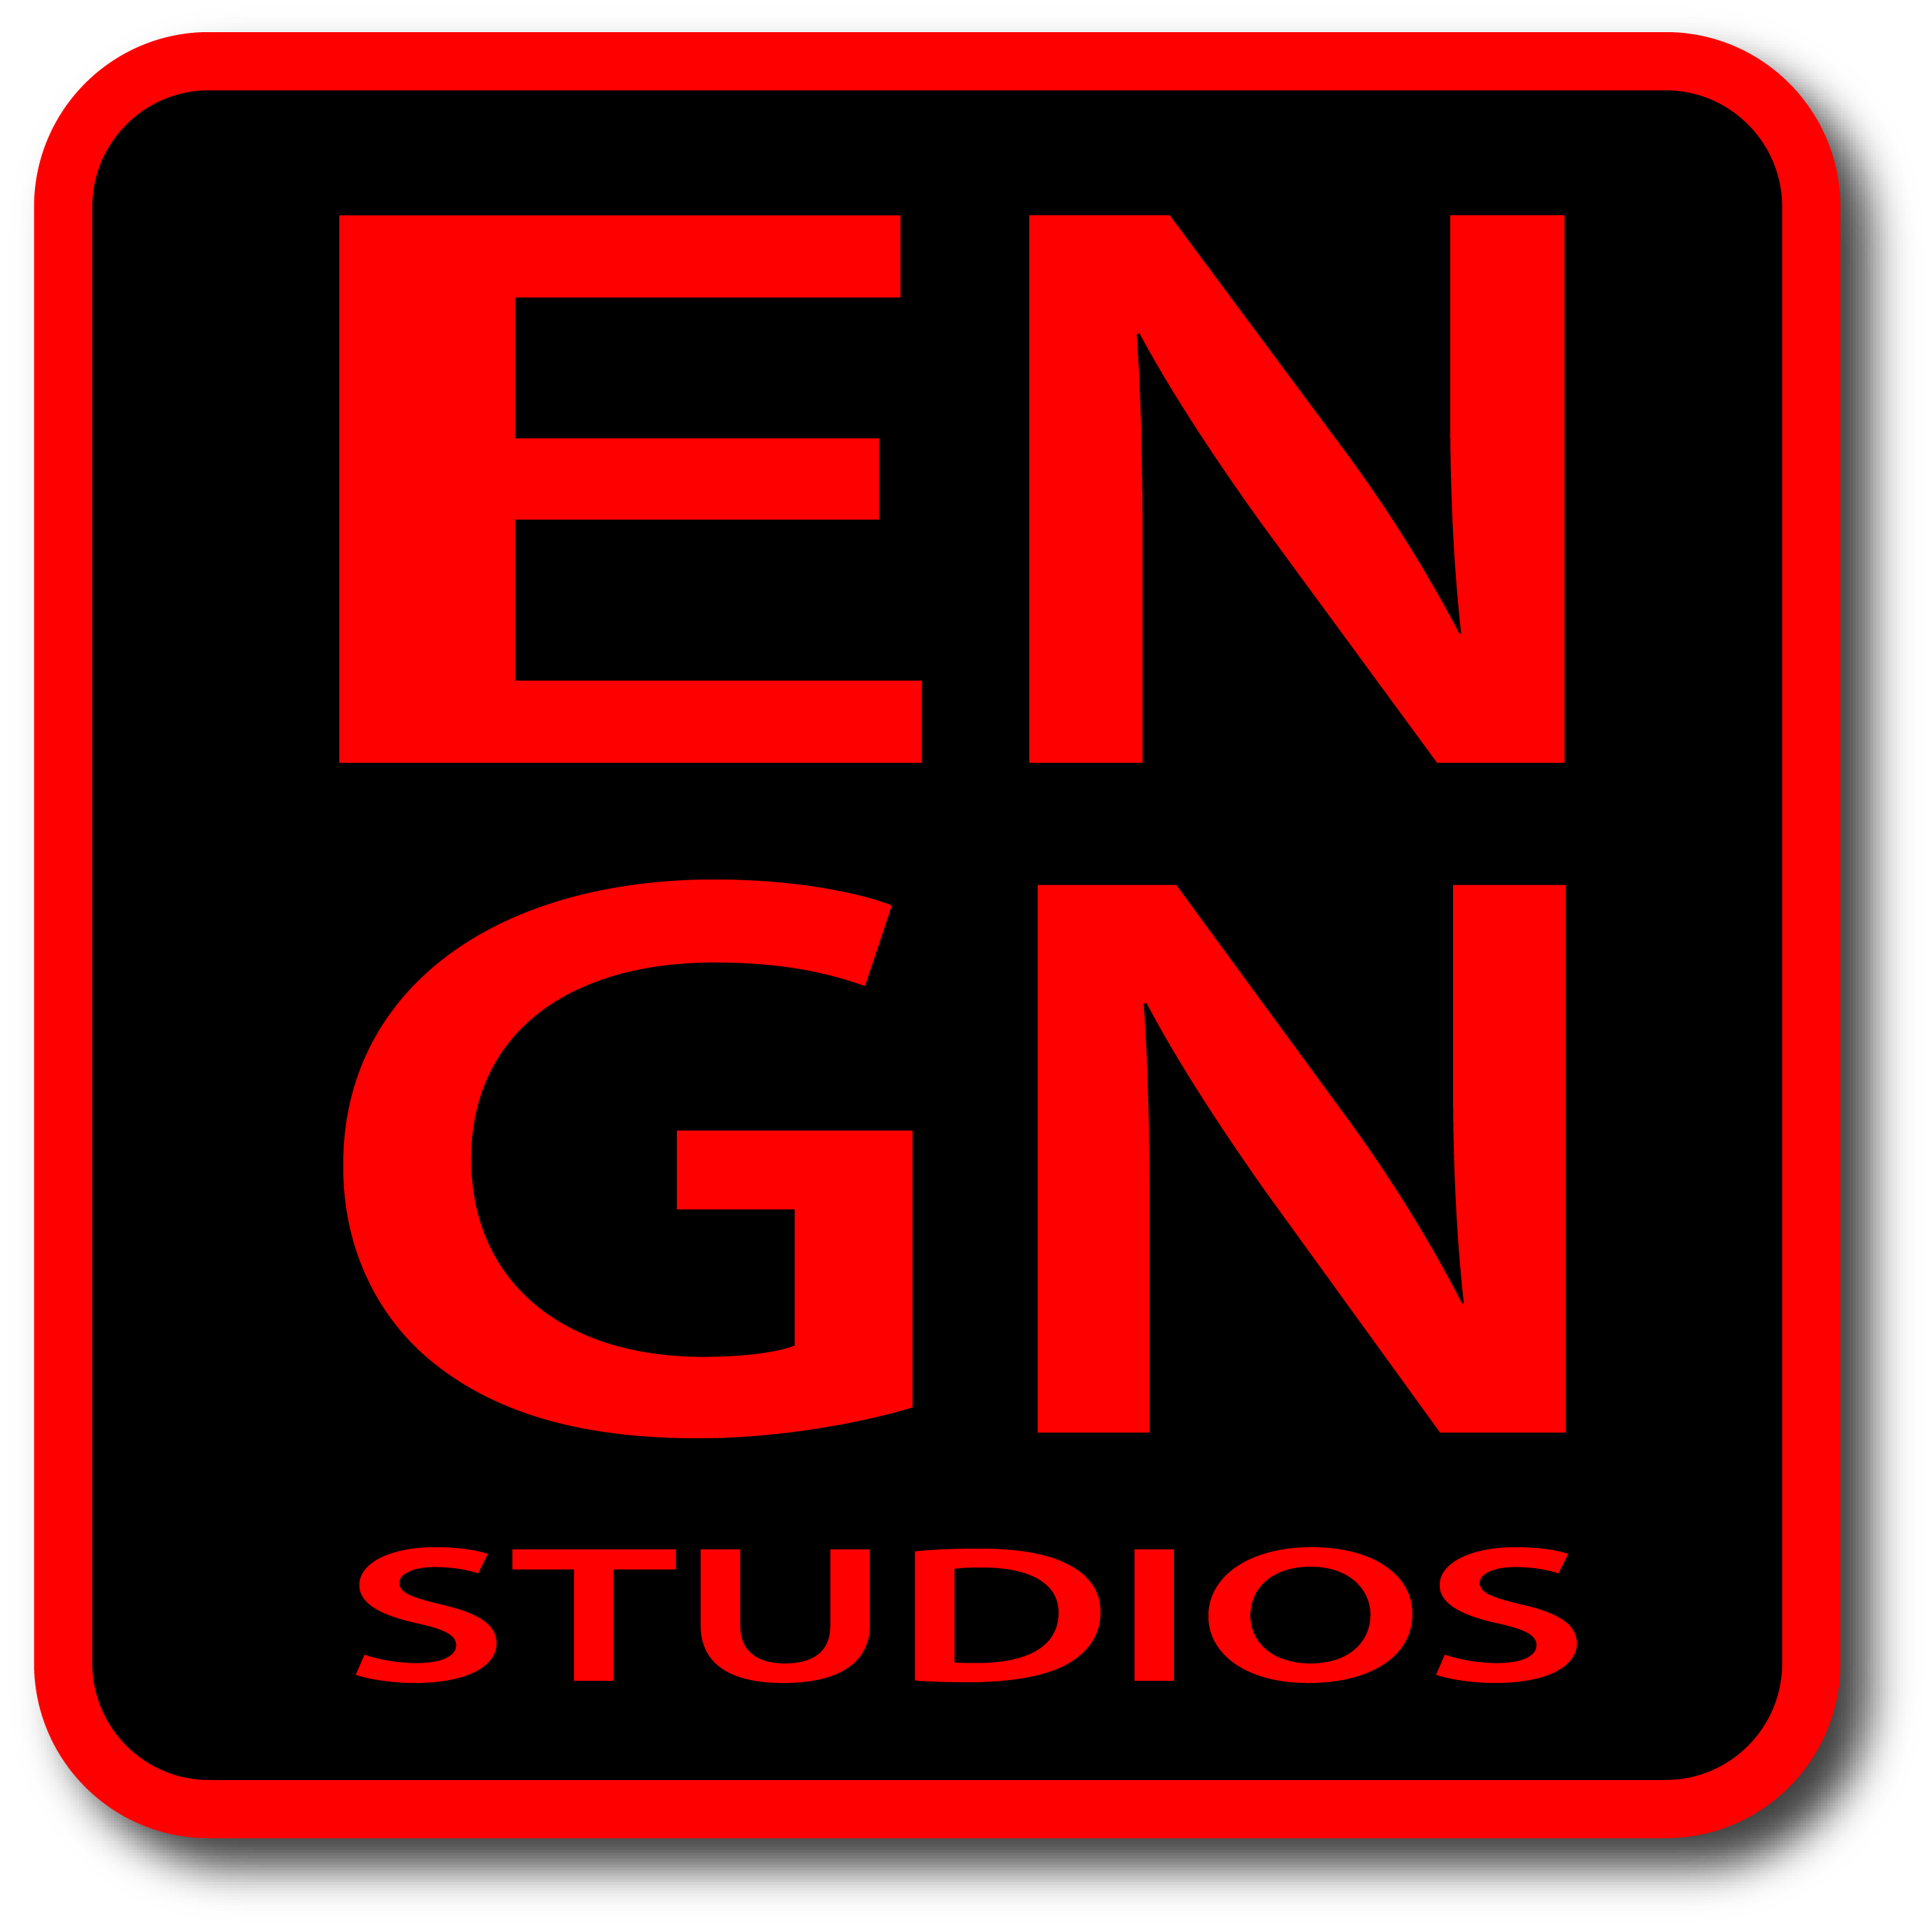 ENGN Studios